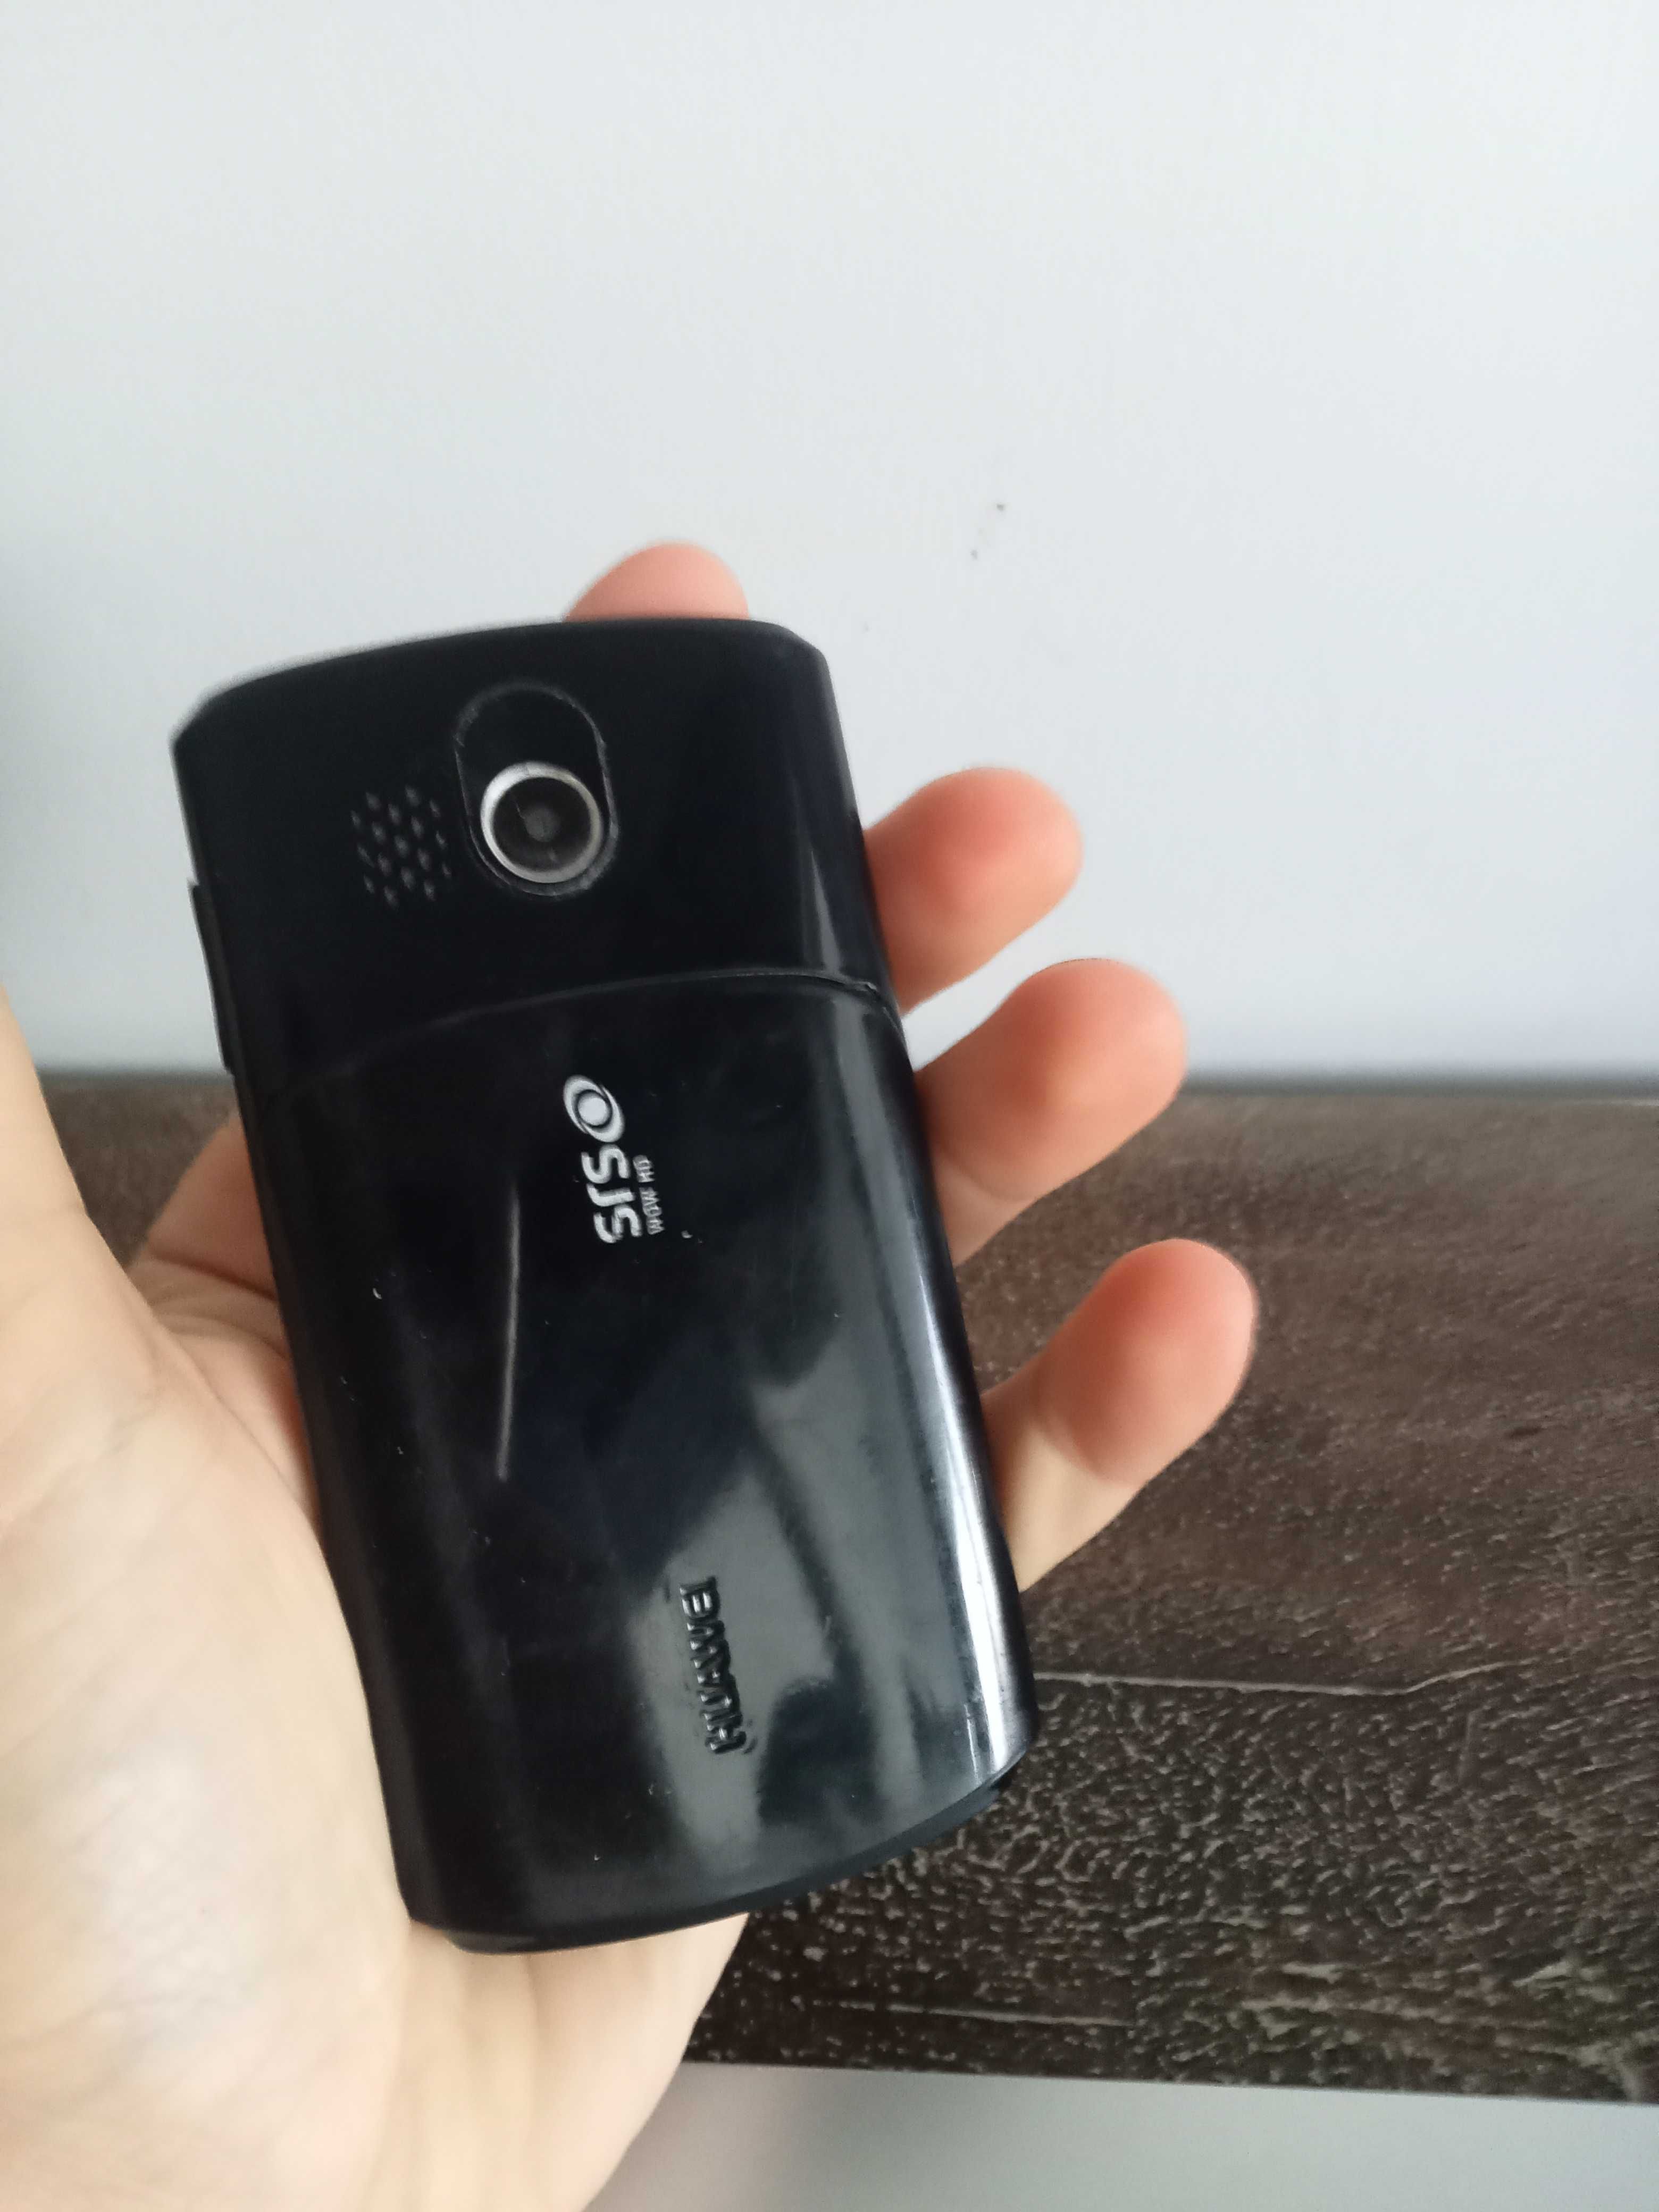 Telefone Huawei - estilo blackberry